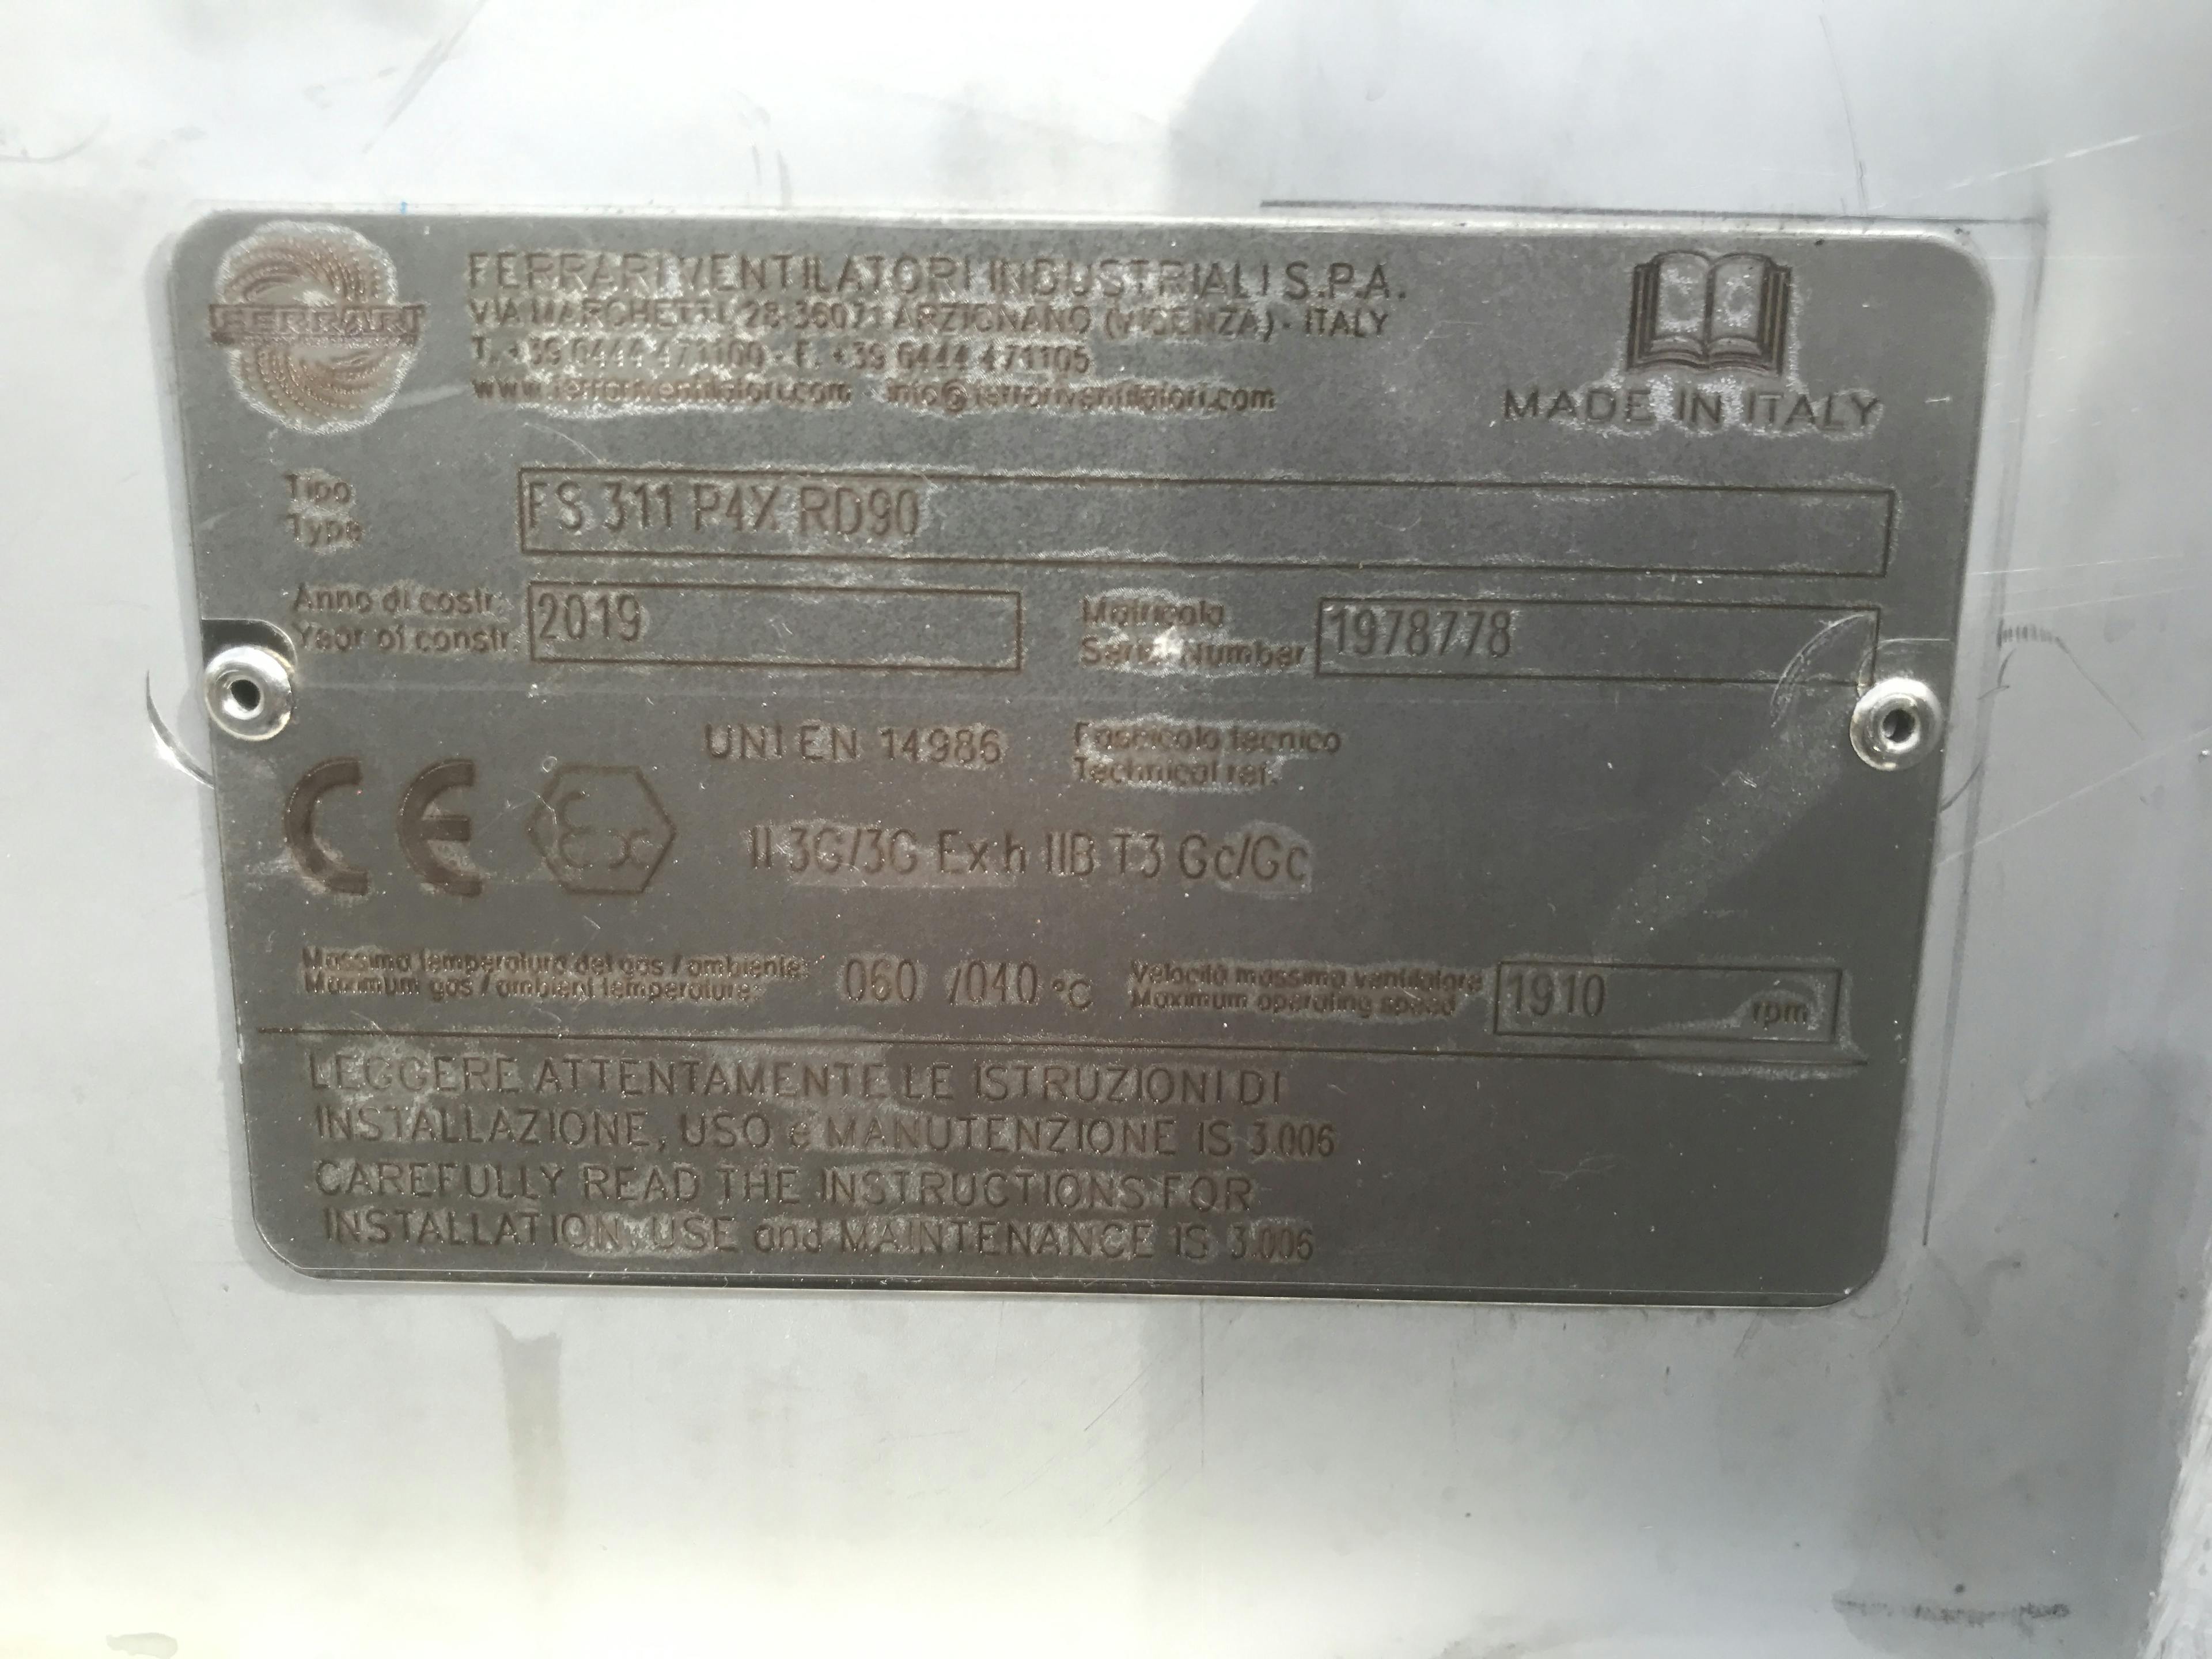 Ferrariventilatori FS 311 P4XRD90 - Soplante - image 5